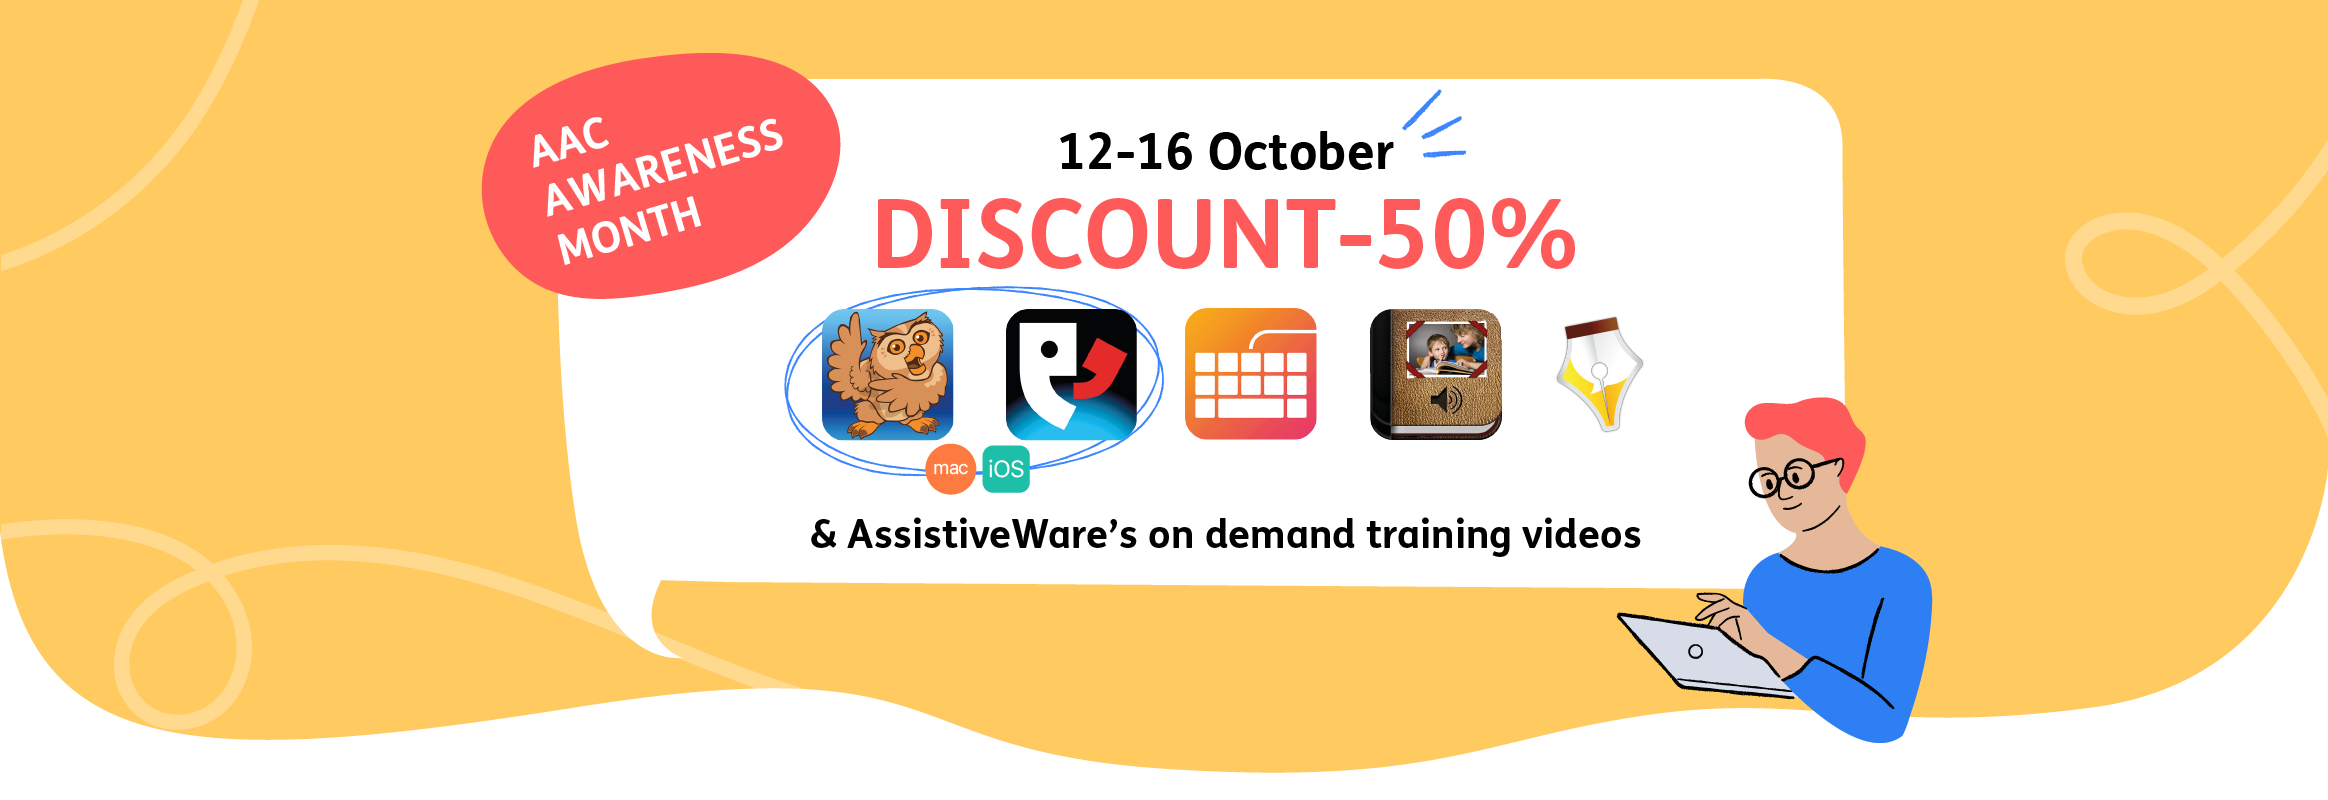 AAC Awareness Month Discount - 50% 12 - 16 October